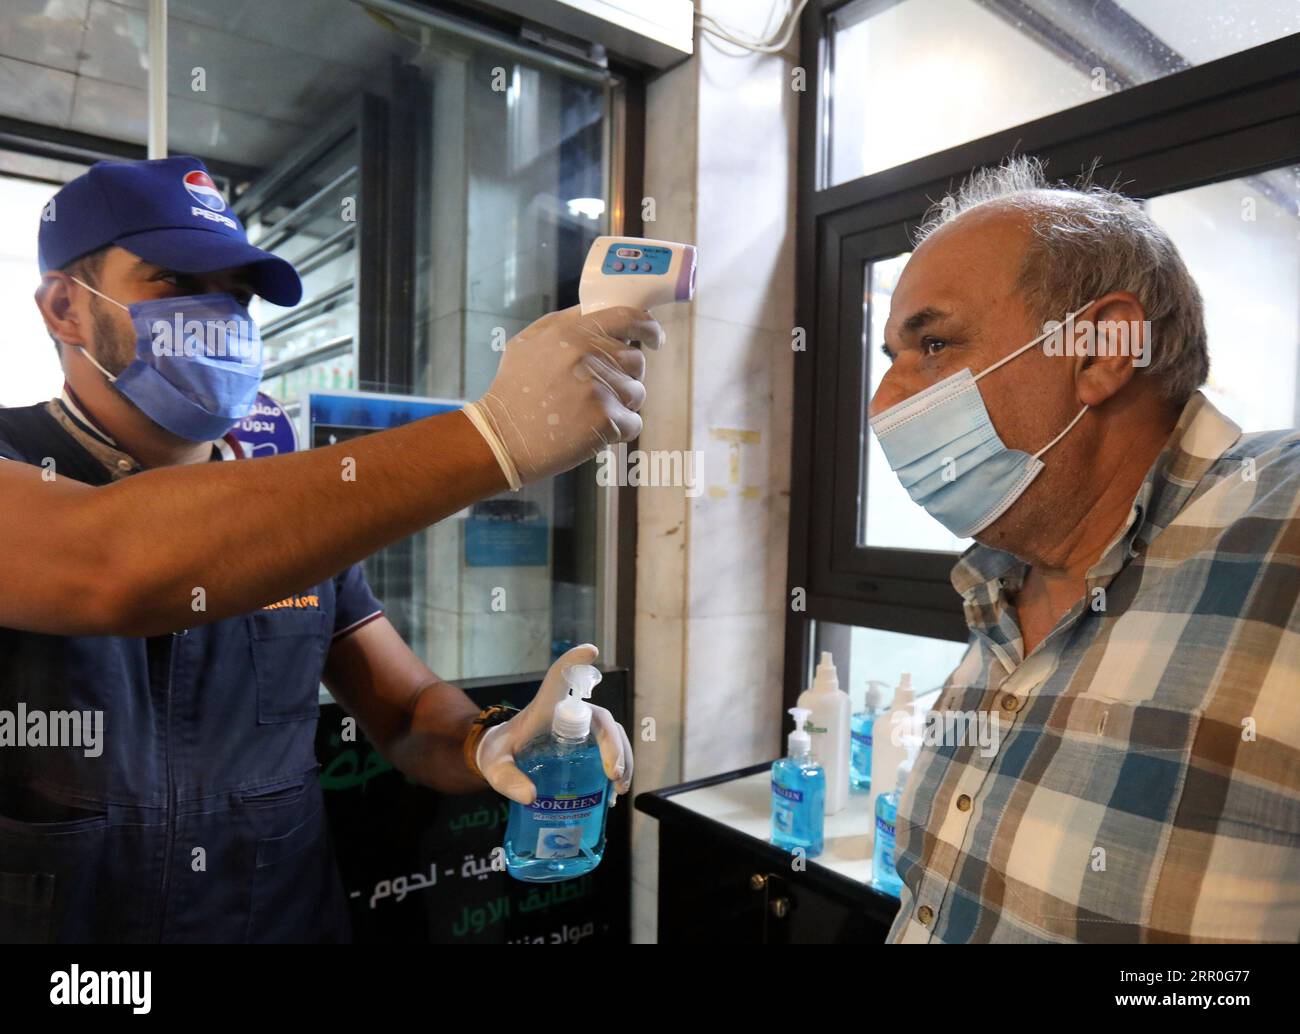 200813 -- BAGDAD, 13. August 2020 Xinhua -- Ein Arbeiter überprüft die Temperatur eines Kunden am Eingang zu einem Einkaufszentrum in Bagdad, Irak, 13. August 2020. Das irakische Gesundheitsministerium verzeichnete am Donnerstag 3.841 neue COVID-19-Fälle, die höchste tägliche Zunahme seit dem Ausbruch der Krankheit, da die Gesundheitsbeamten vor einer höheren Anzahl von Infektionen in den kommenden Tagen warnten. Xinhua/Khalil Dawood IRAQ-BAGDAD-COVID-19-FÄLLE PUBLICATIONxNOTxINxCHN Stockfoto